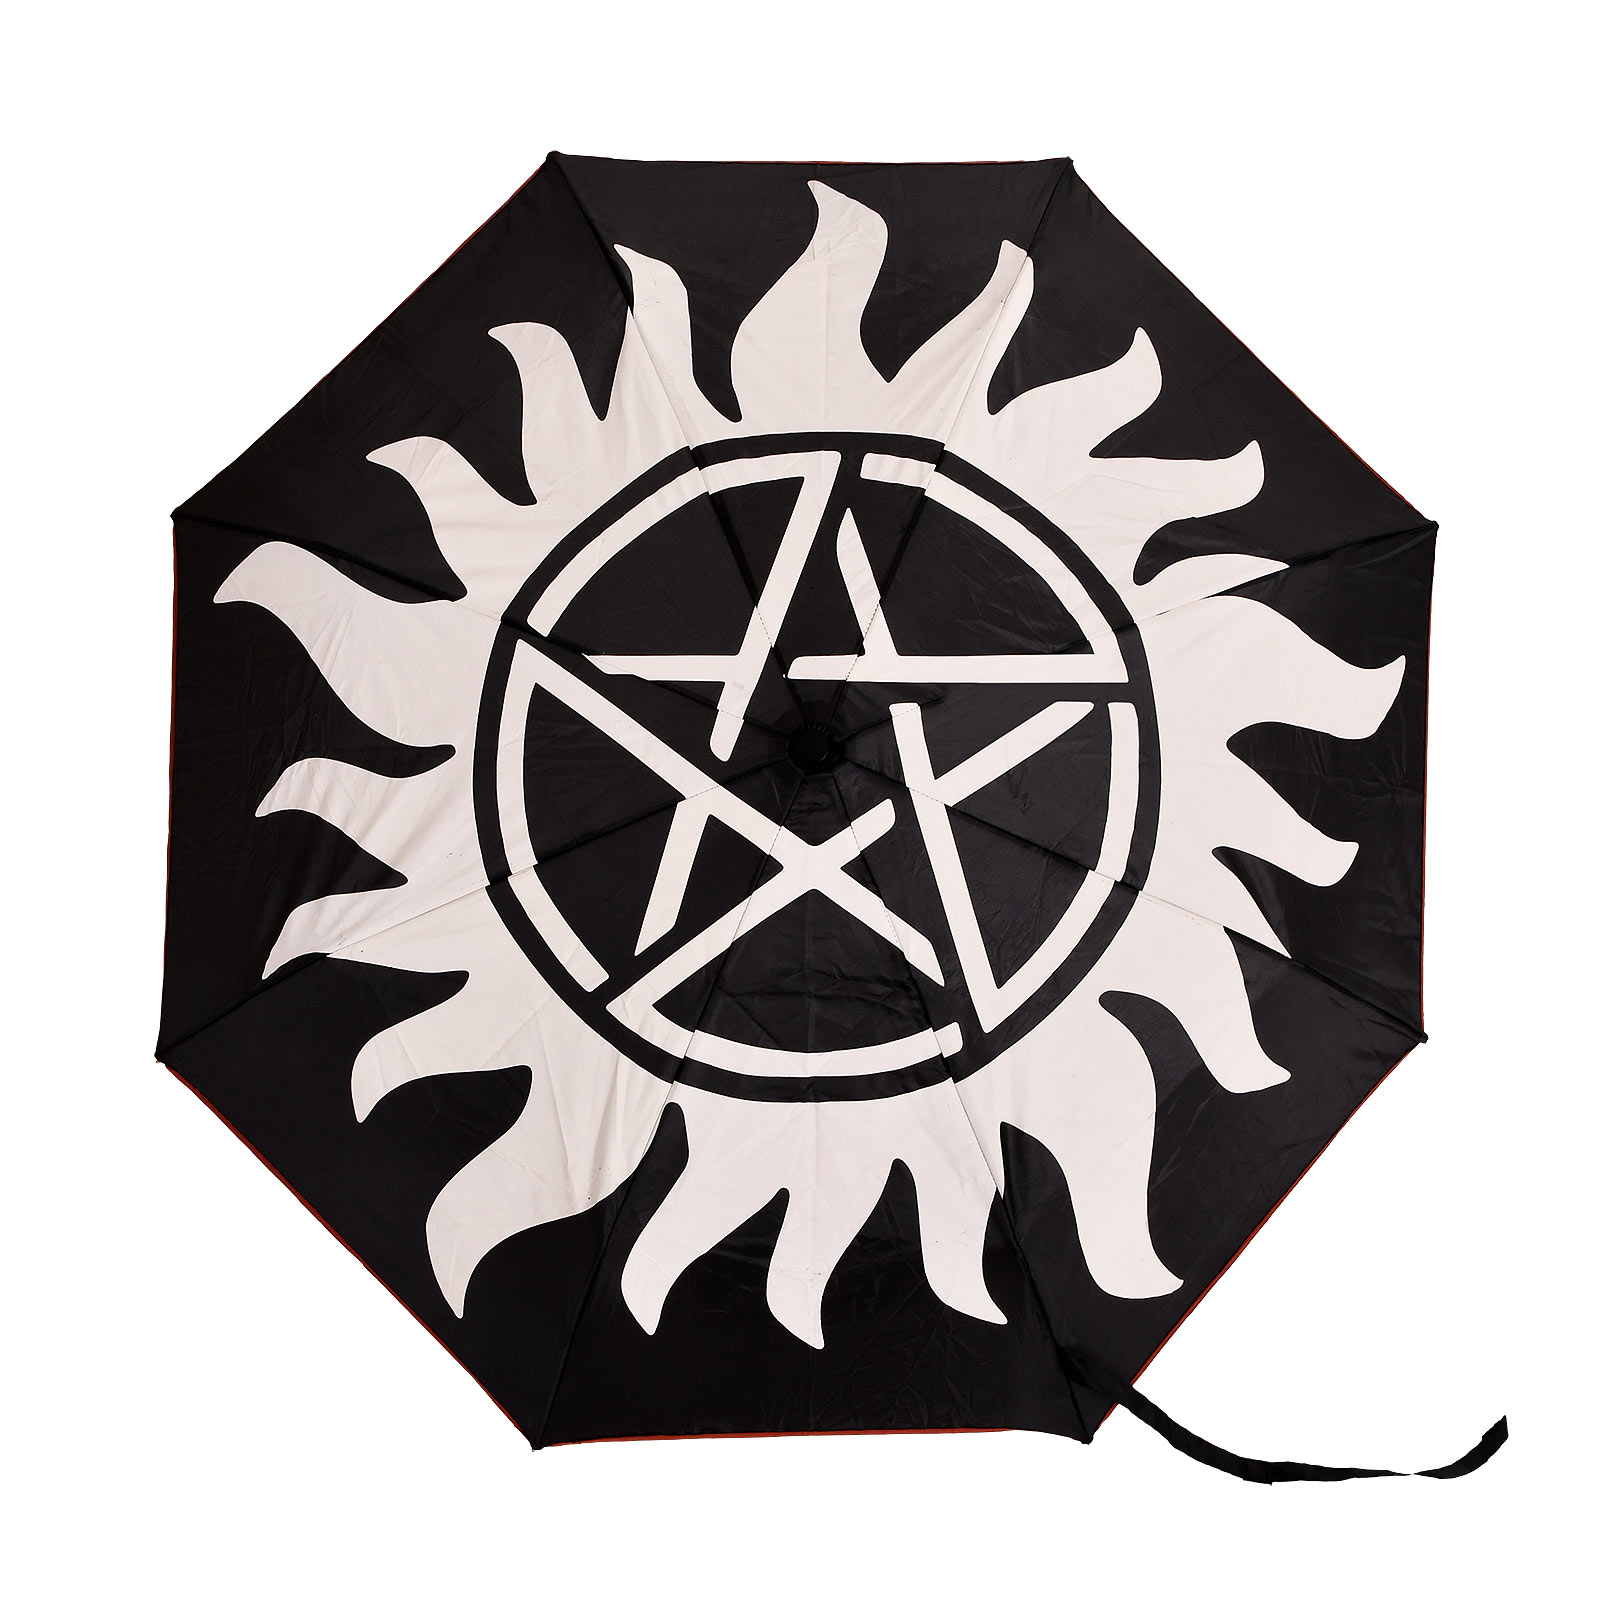 Supernatural - Anti Bezit Symbool Paraplu met Aqua Effect